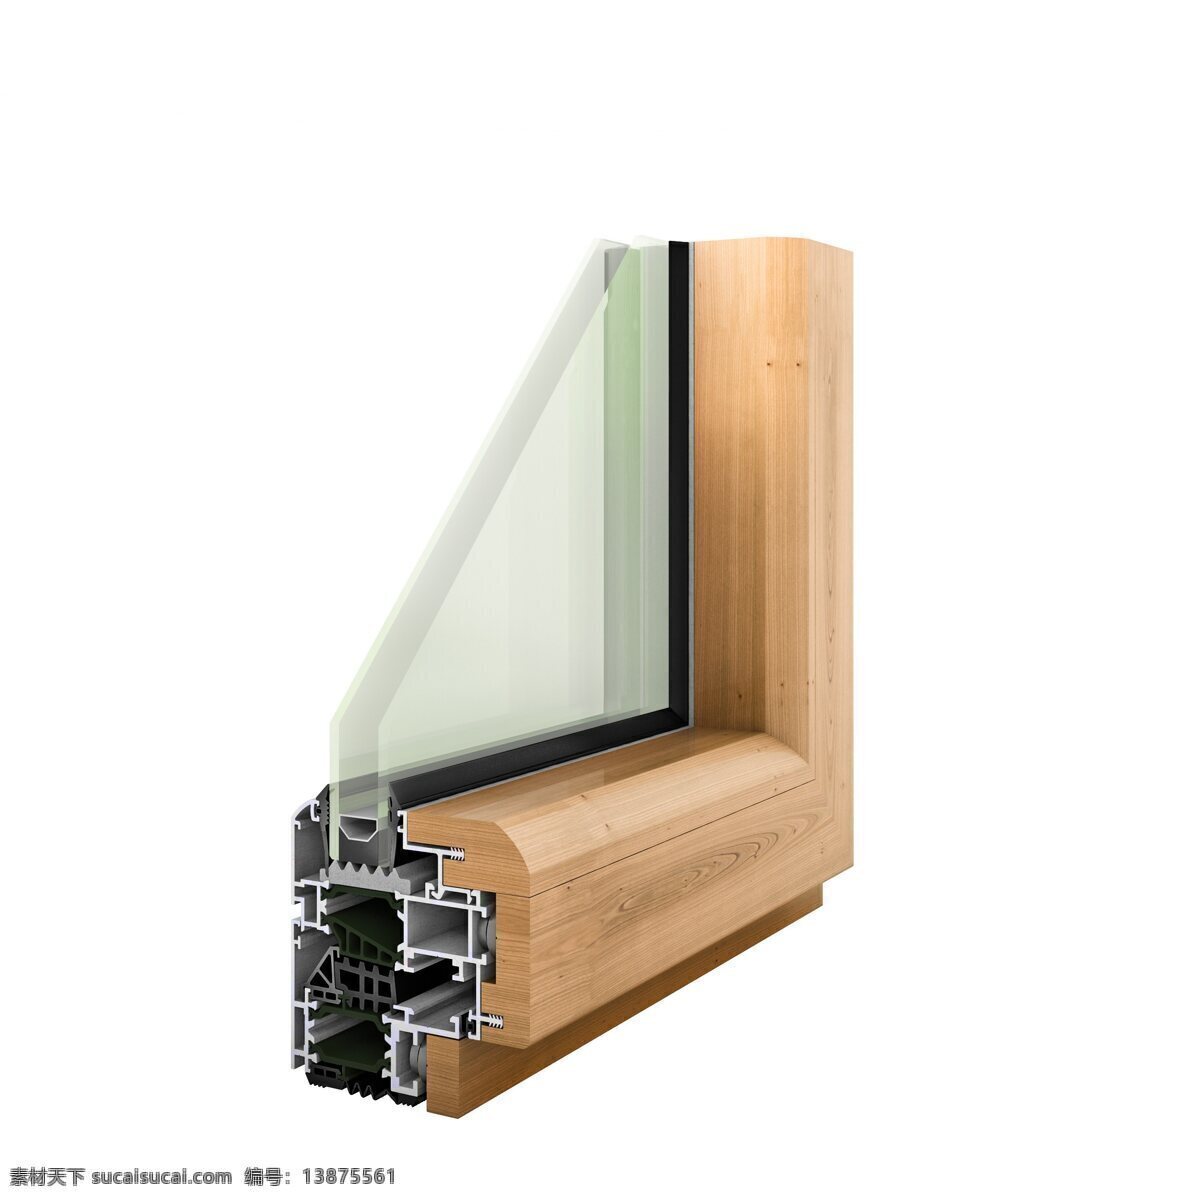 铝包木窗 样角 中空玻璃窗 平开窗 铝木窗样角 生活百科 生活用品